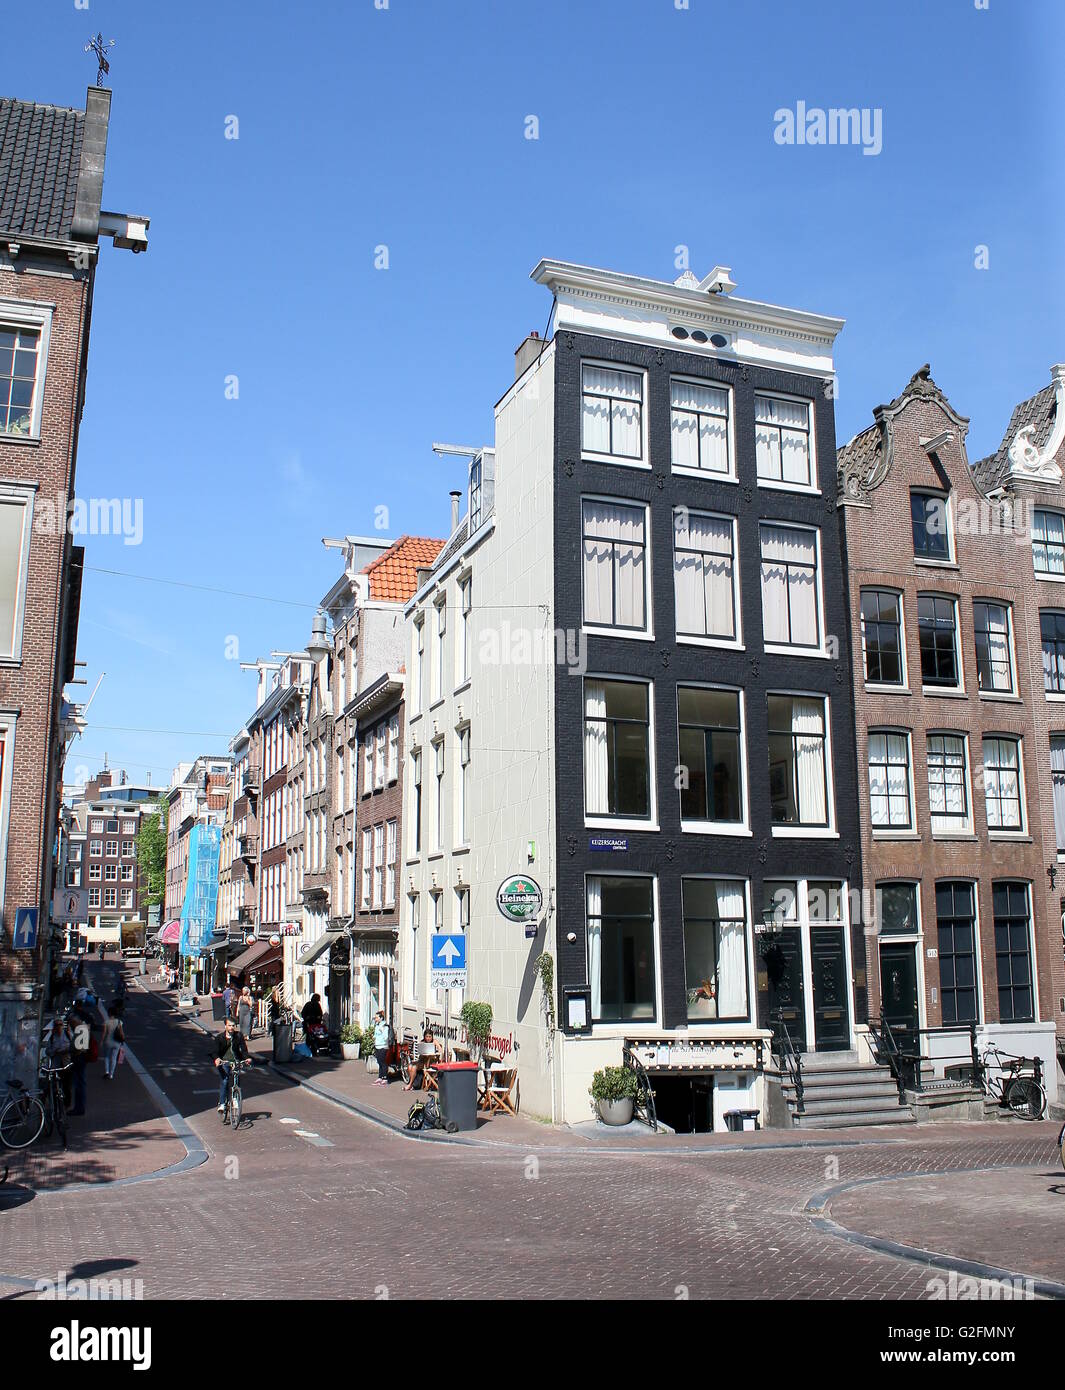 Shops at Berenstraat (Bear Street) corner with Keizersgracht. Negen Straatjes/ Nine Streets Neigbourhood, Amsterdam, Netherlands Stock Photo